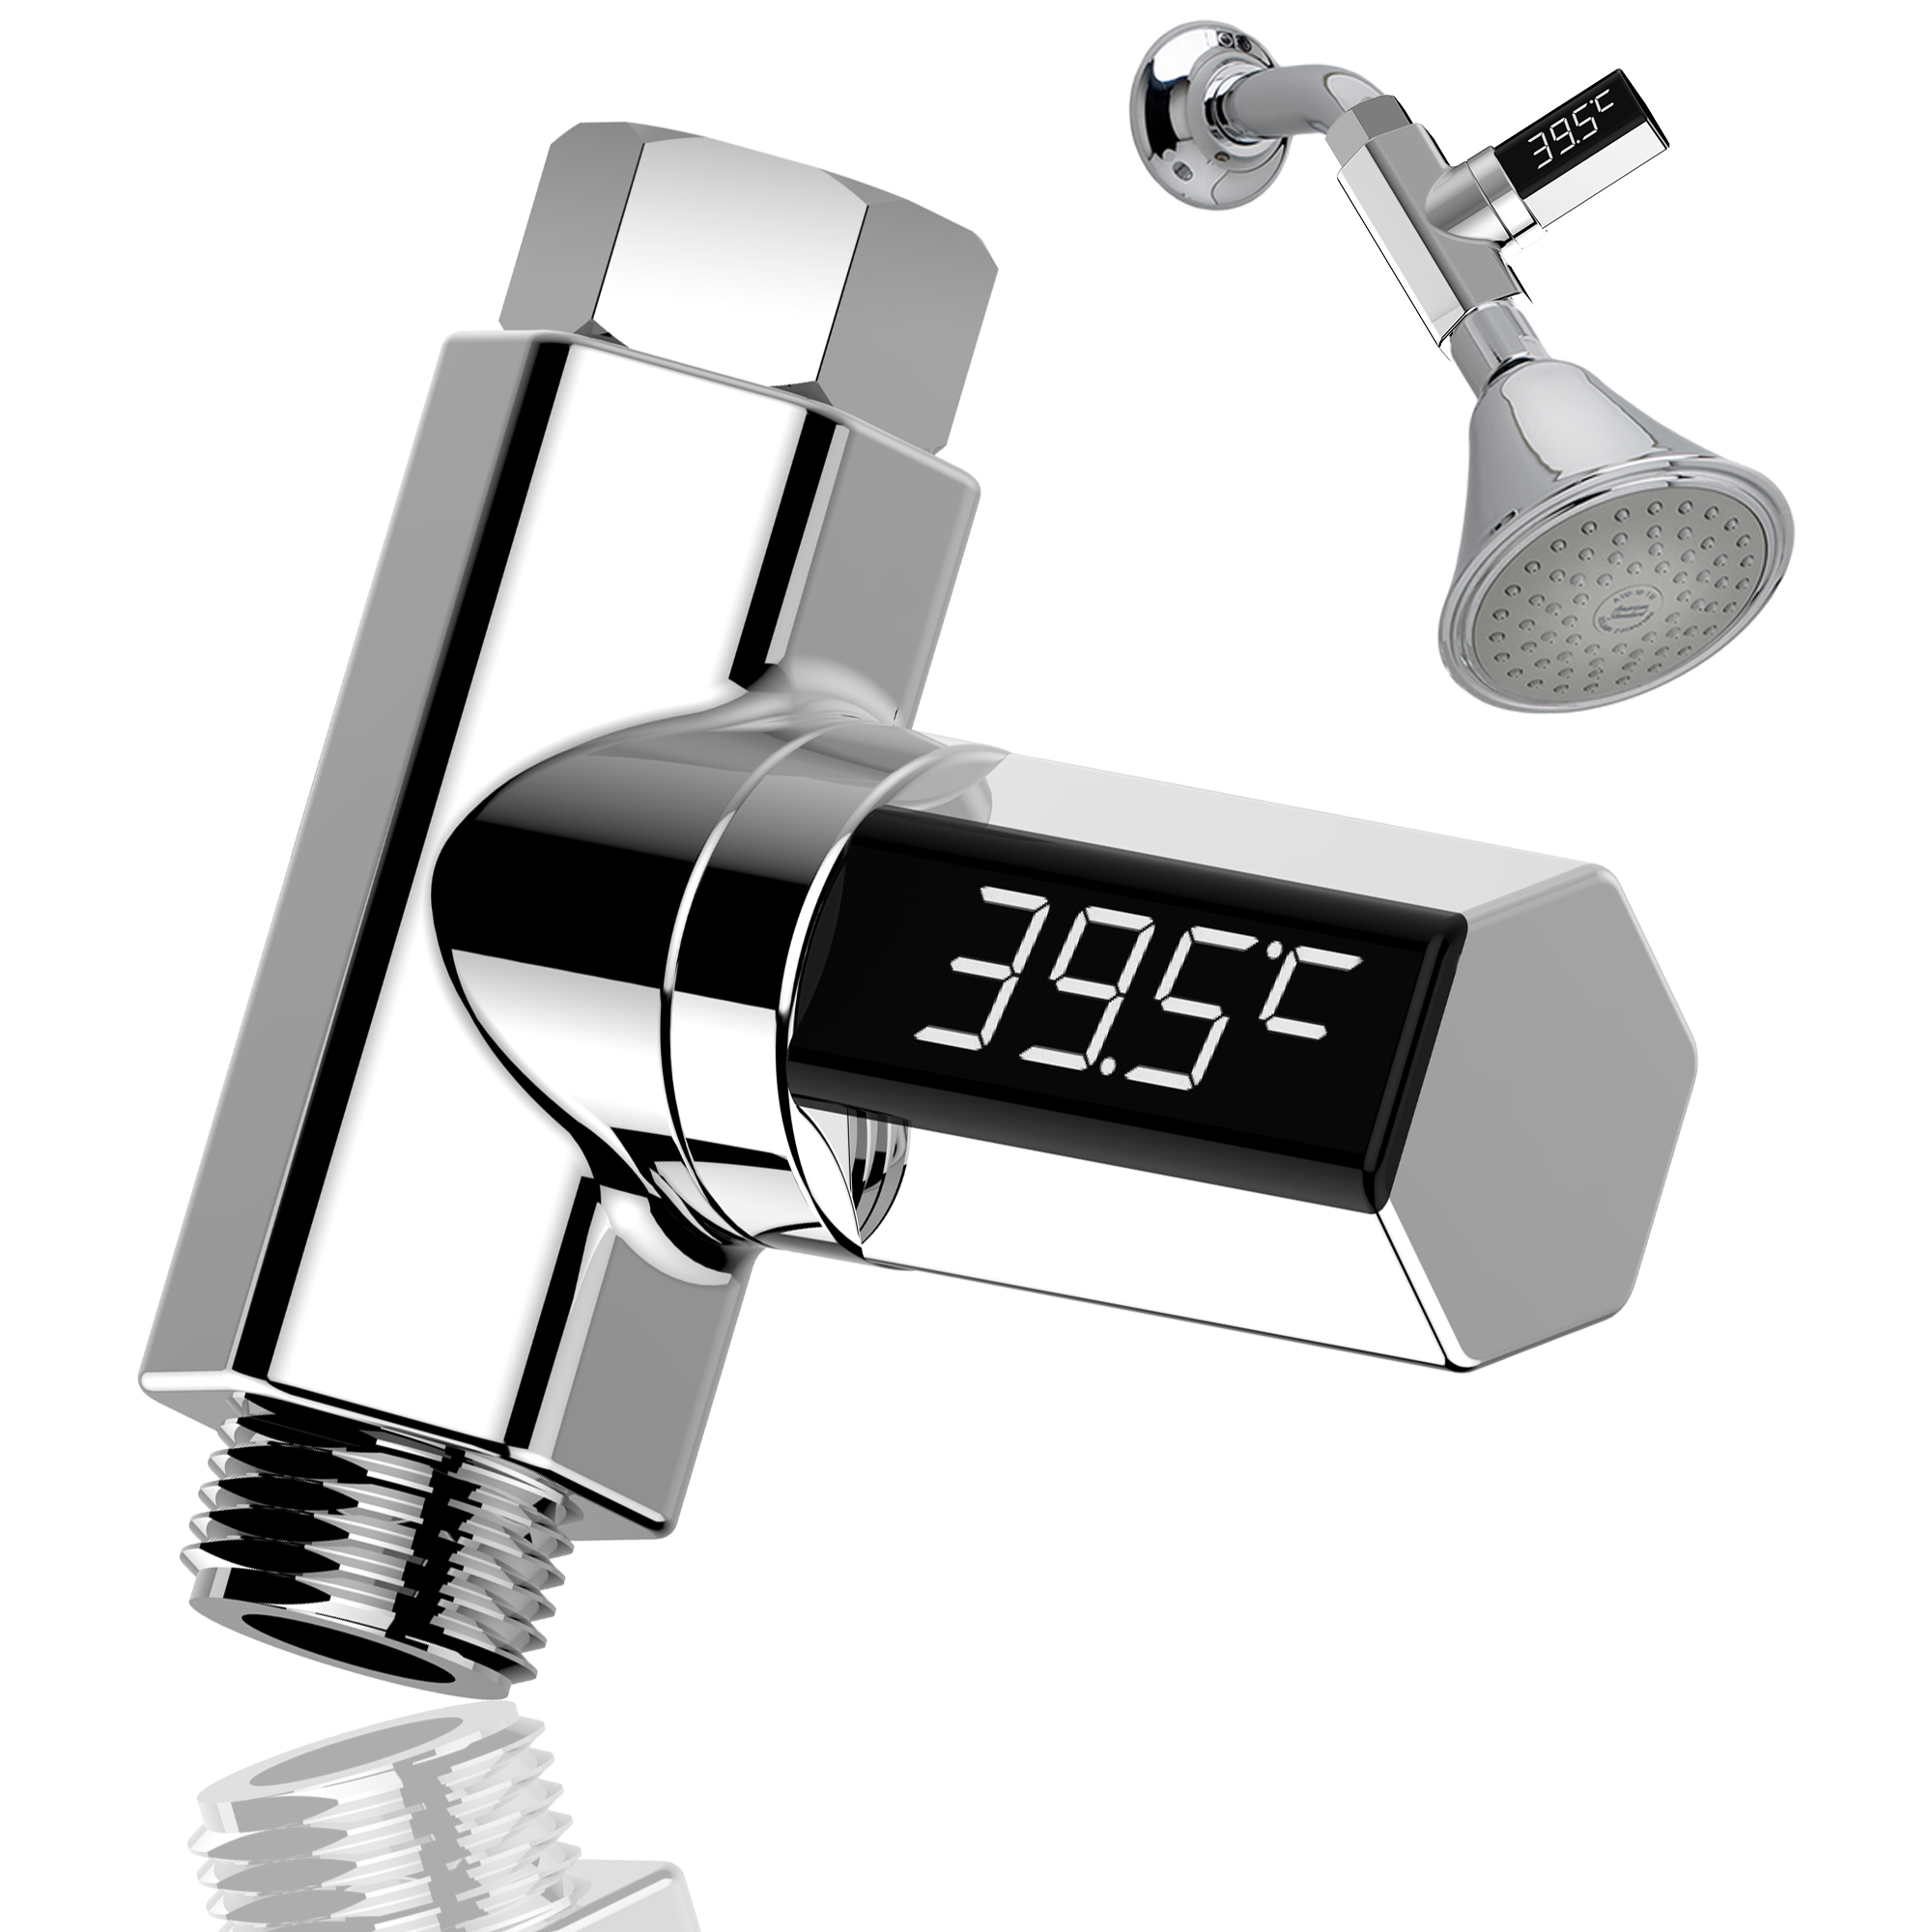 Loskii LW 102 Version amelioree Affichage a LED Thermometre de douche deau a la maison Celsius